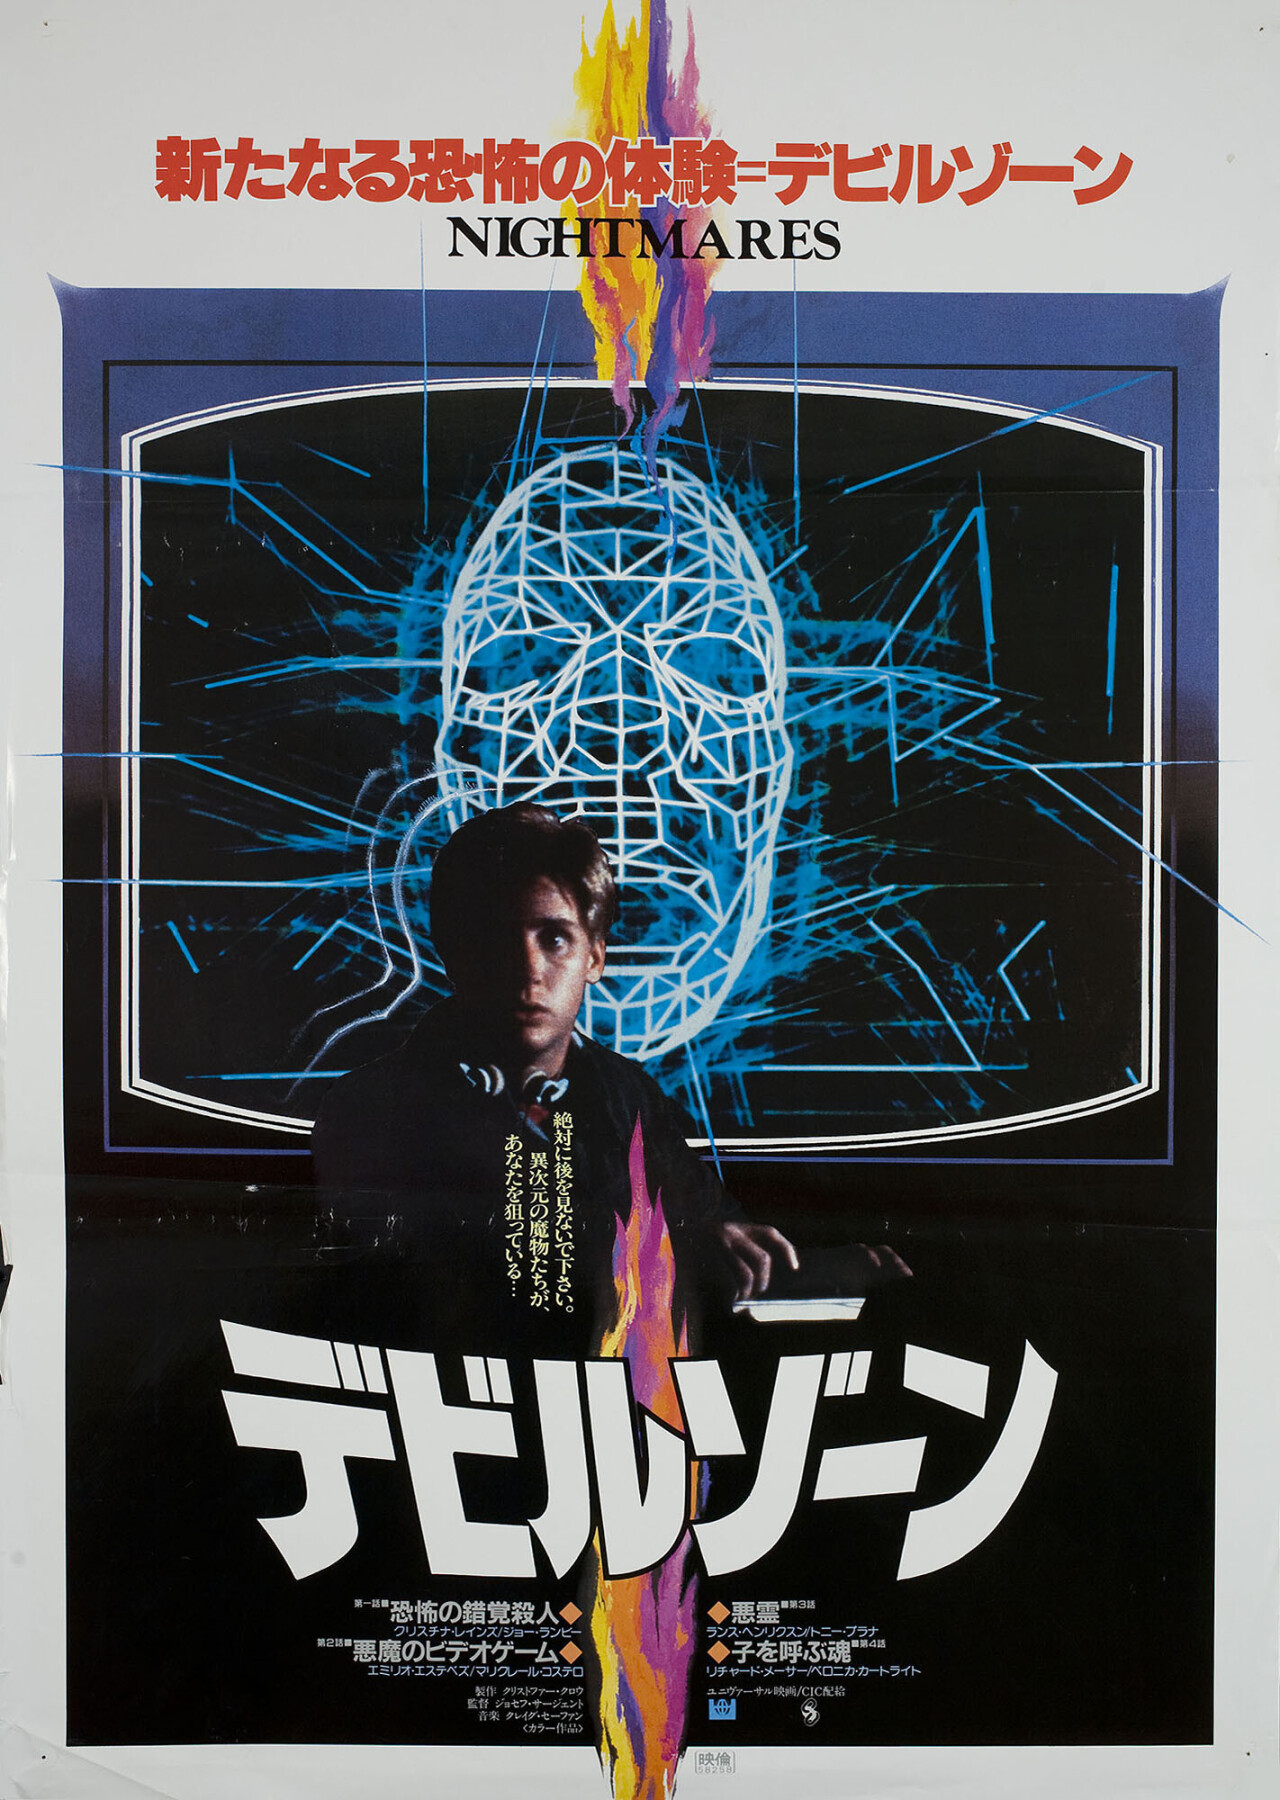 Кошмары (Nightmares, 1983), режиссёр Джозеф Сарджент, японский постер к фильму (ужасы, 1983 год)